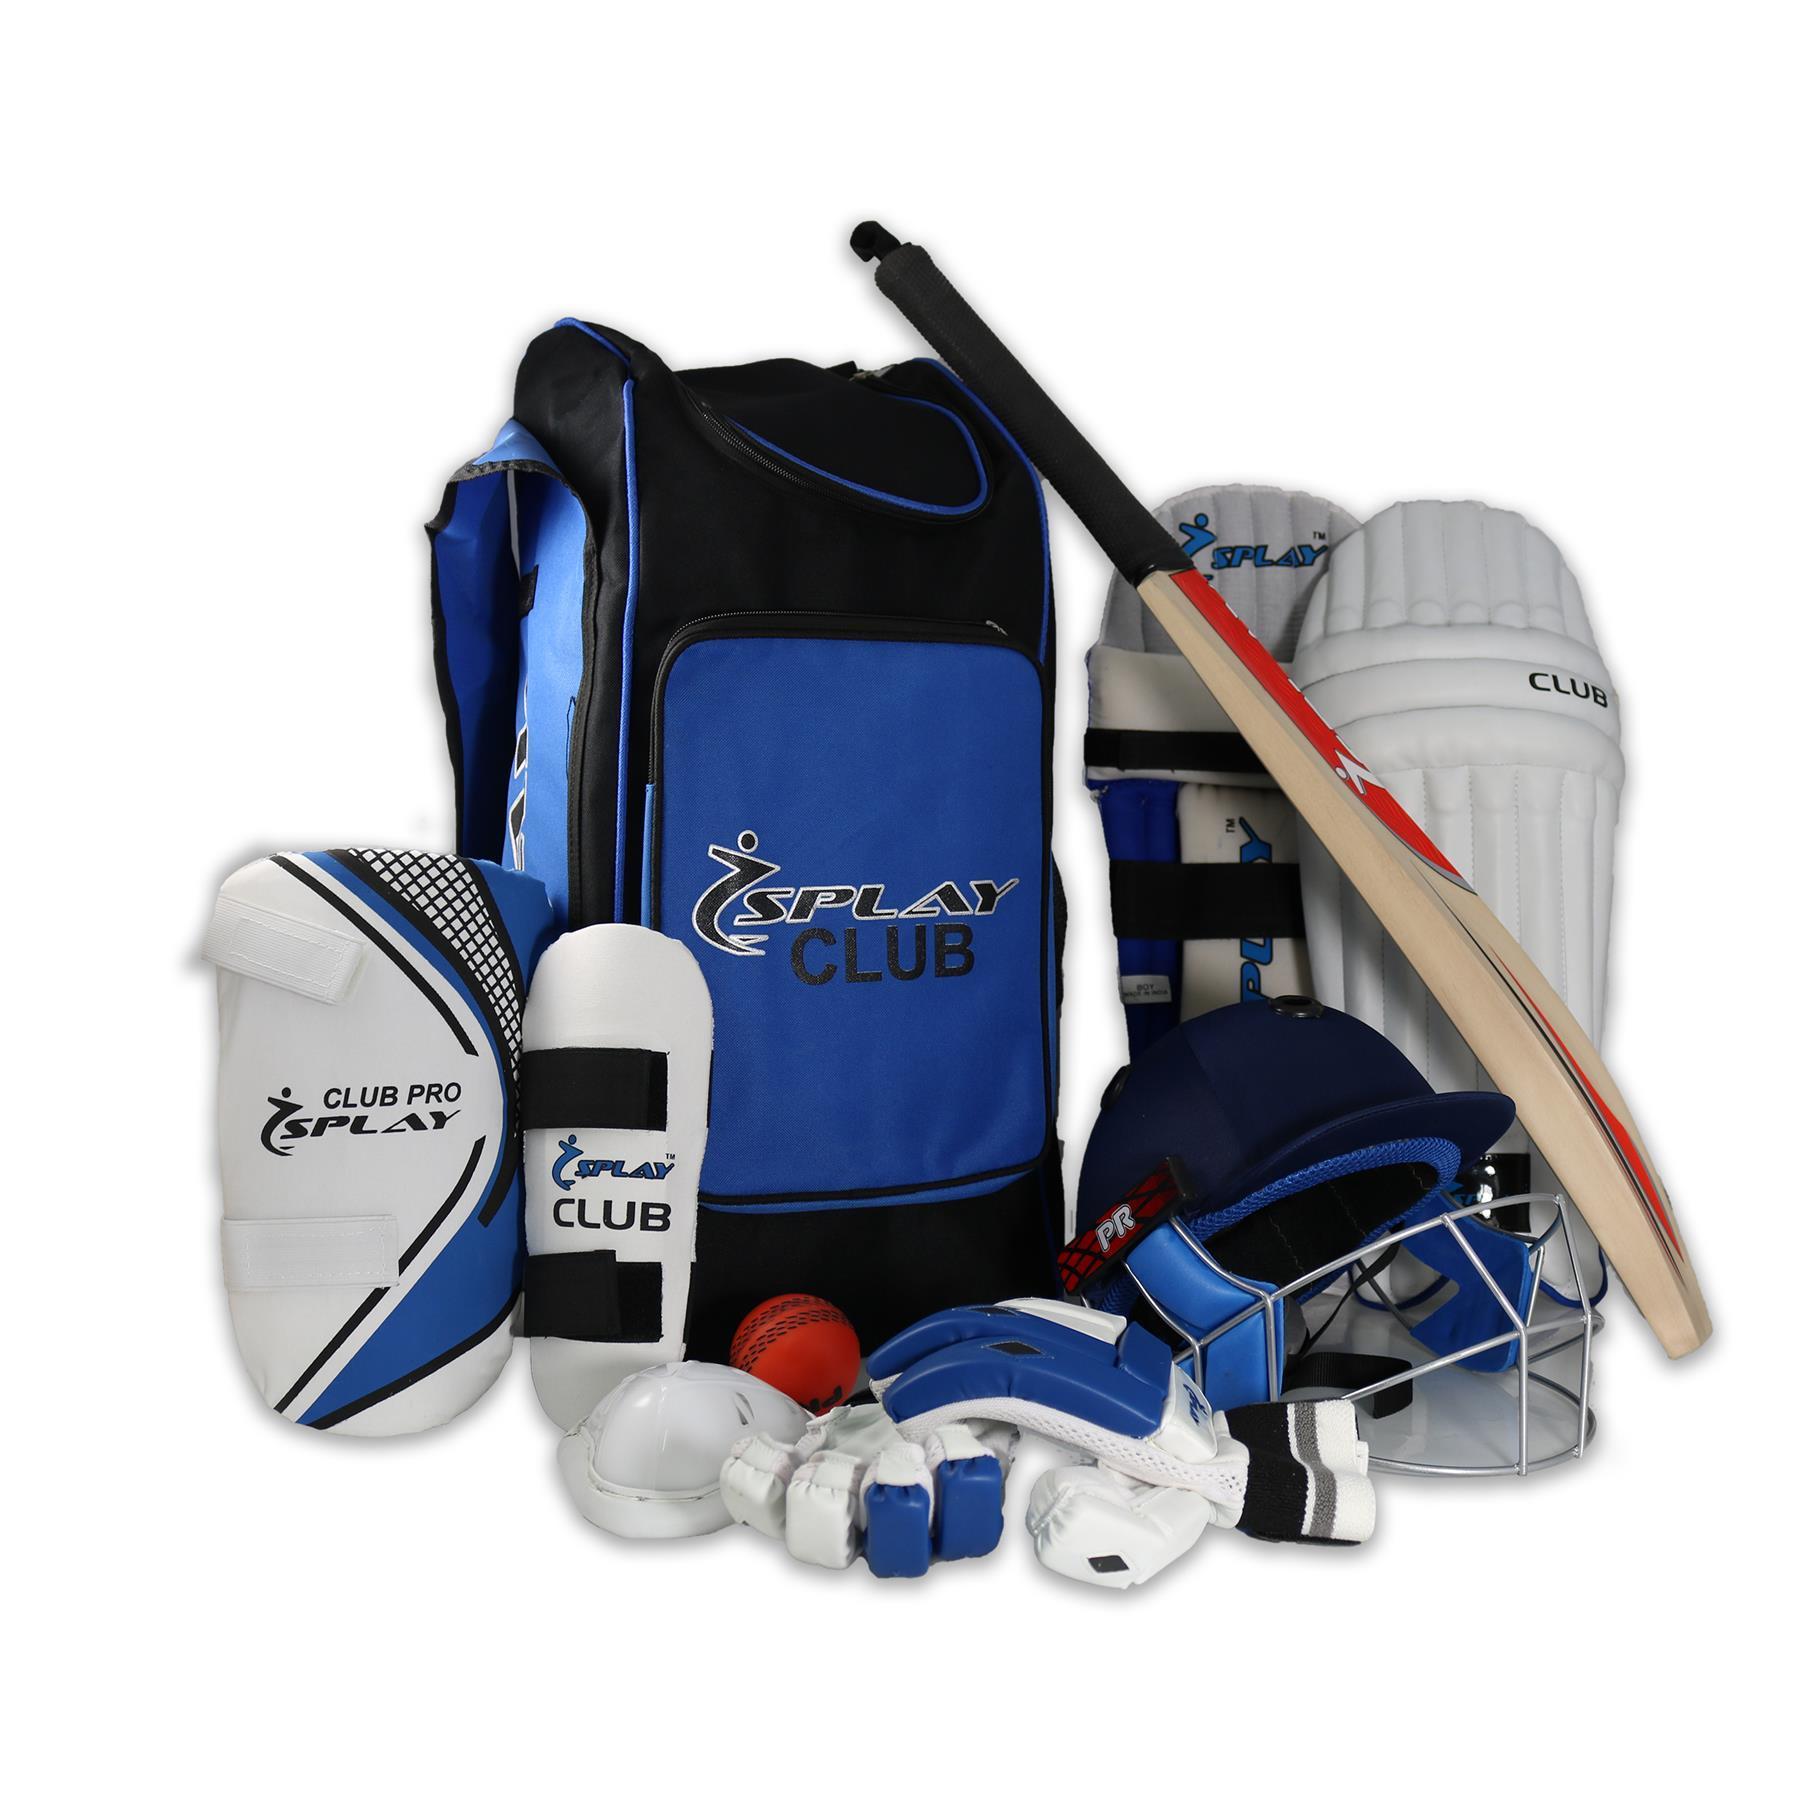 SS Ranger Cricket Kit Bag